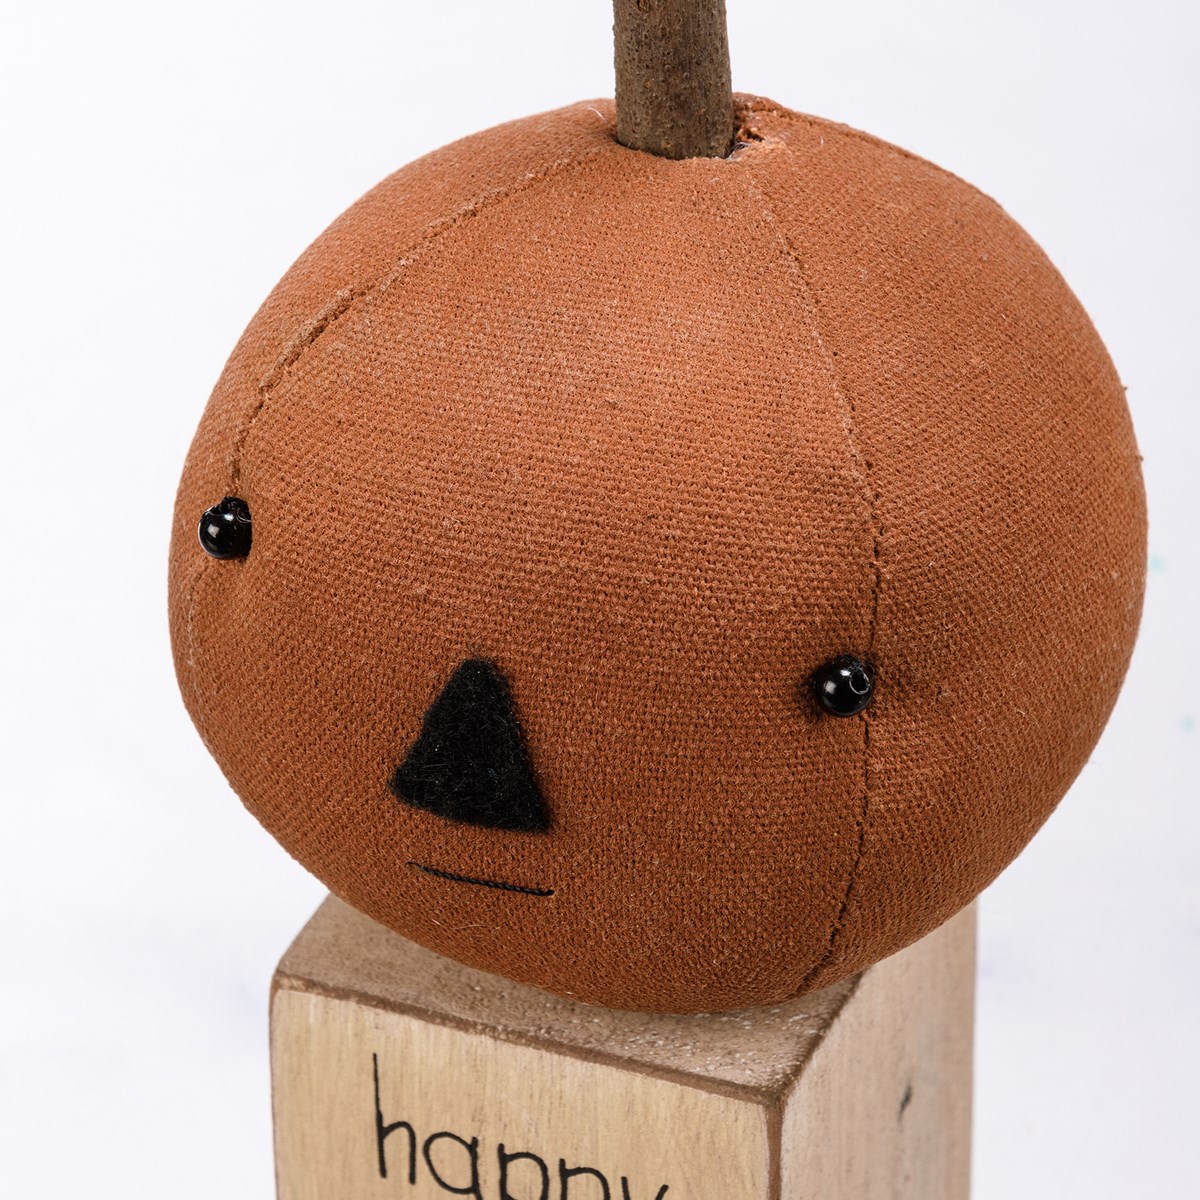 Sitter - Pumpkin Head - 3.50" x 7" x 3.50" - Cotton, Wood, Plastic